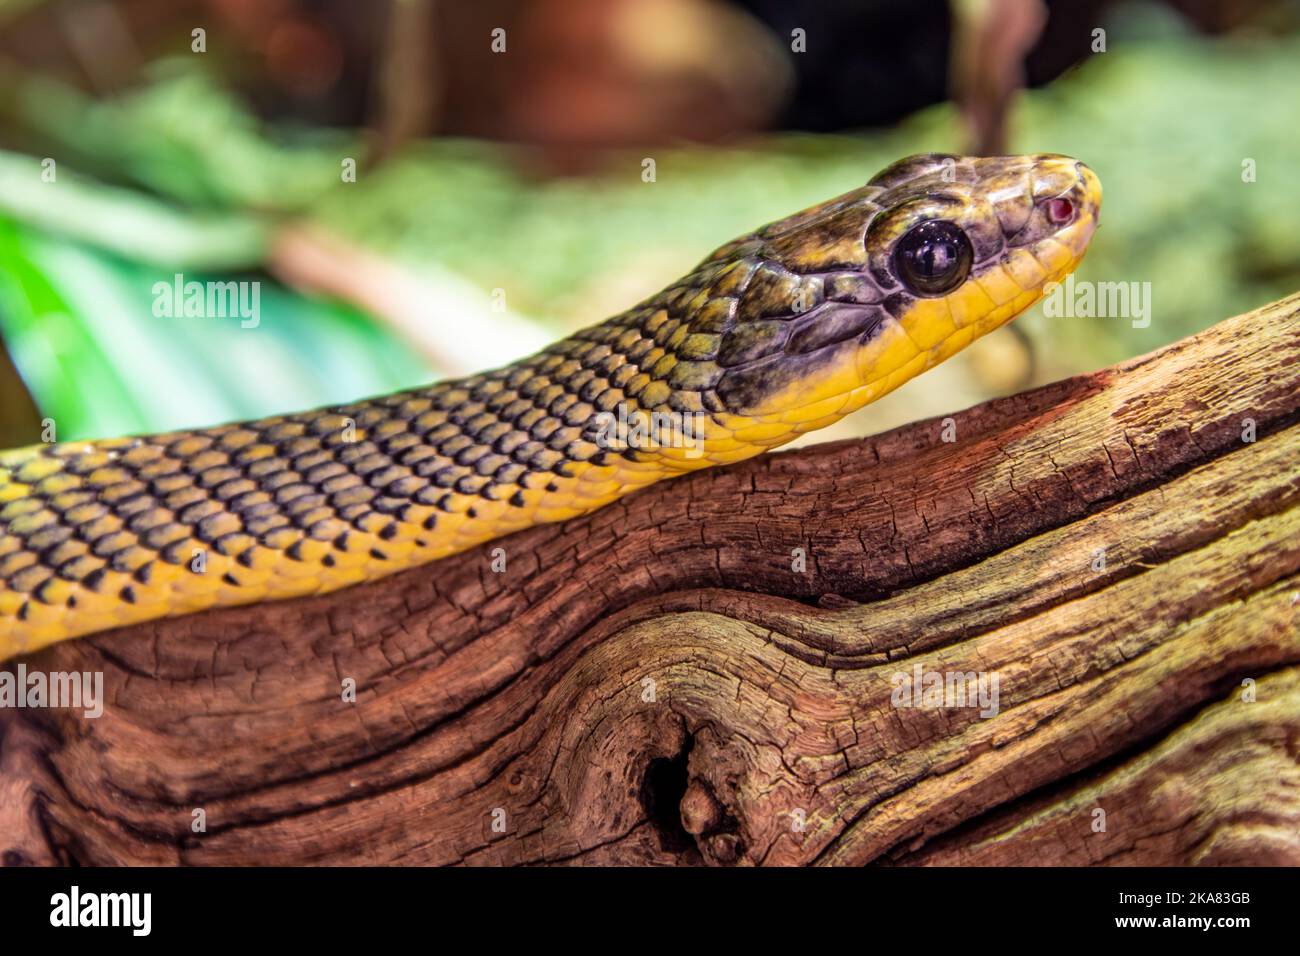 La couleuvre d'oiseau néotrope (Phrynonax poecilonotus) est une espèce de serpent non venimeux de la famille des Colubridae. L'espèce est endémique au Nouveau monde. Banque D'Images